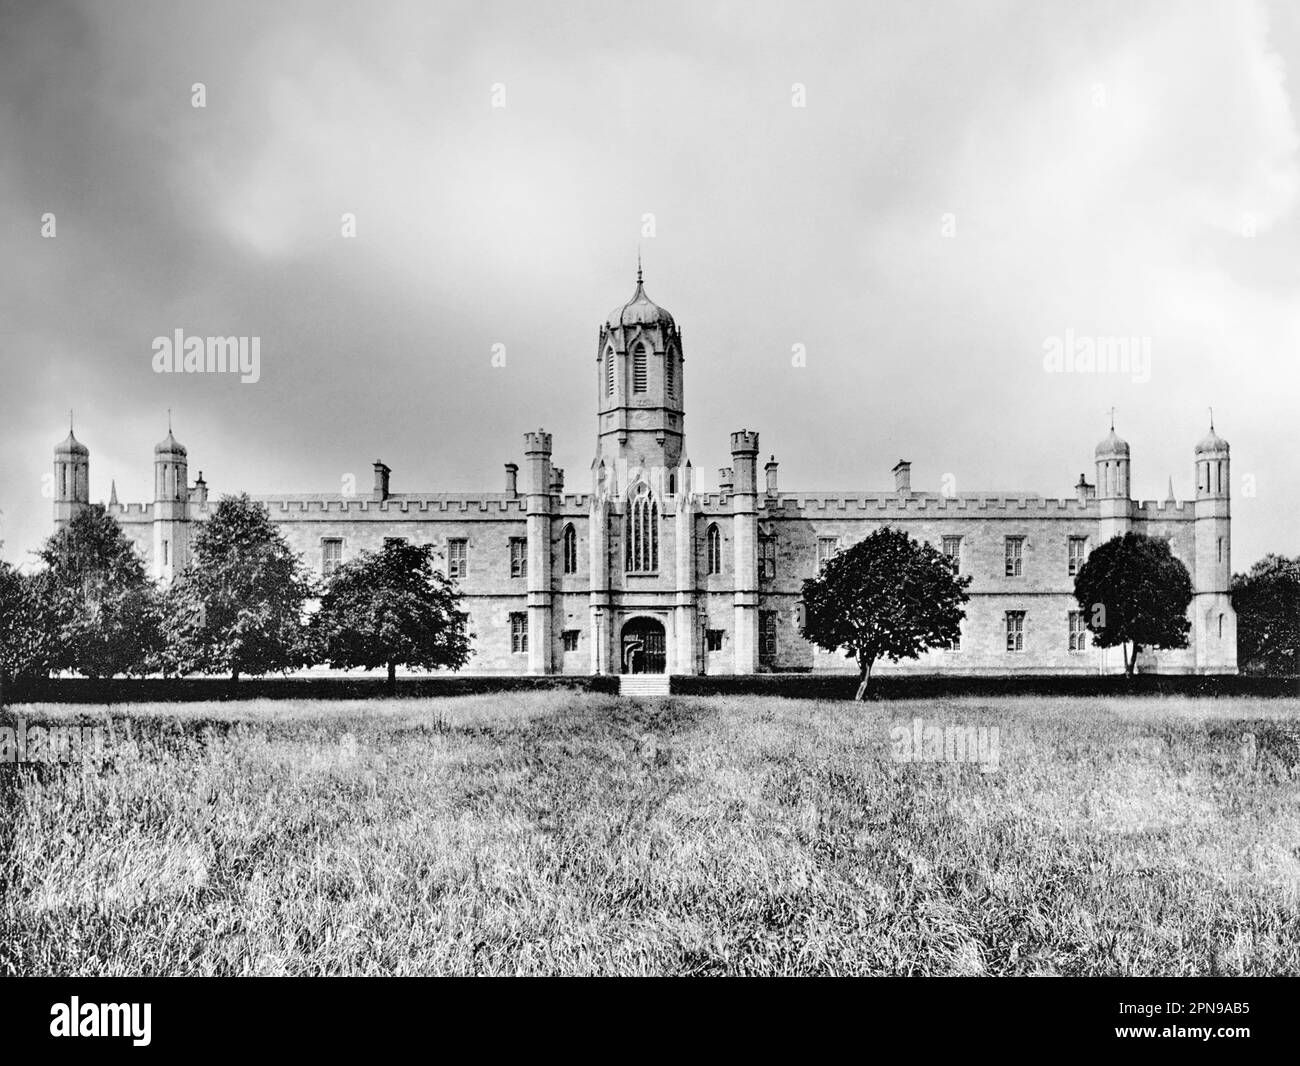 Una vista tardo 19th ° secolo del Tudor-Gothic Queens College, Galway, Irlanda. Progettato dall'architetto J B Keane e completato nel 1849, è apparentemente una replica di Christ Church, uno degli edifici del campus dell'Università di Oxford. Ora solo uno degli edifici del campus dell'Università di Galway. Foto Stock